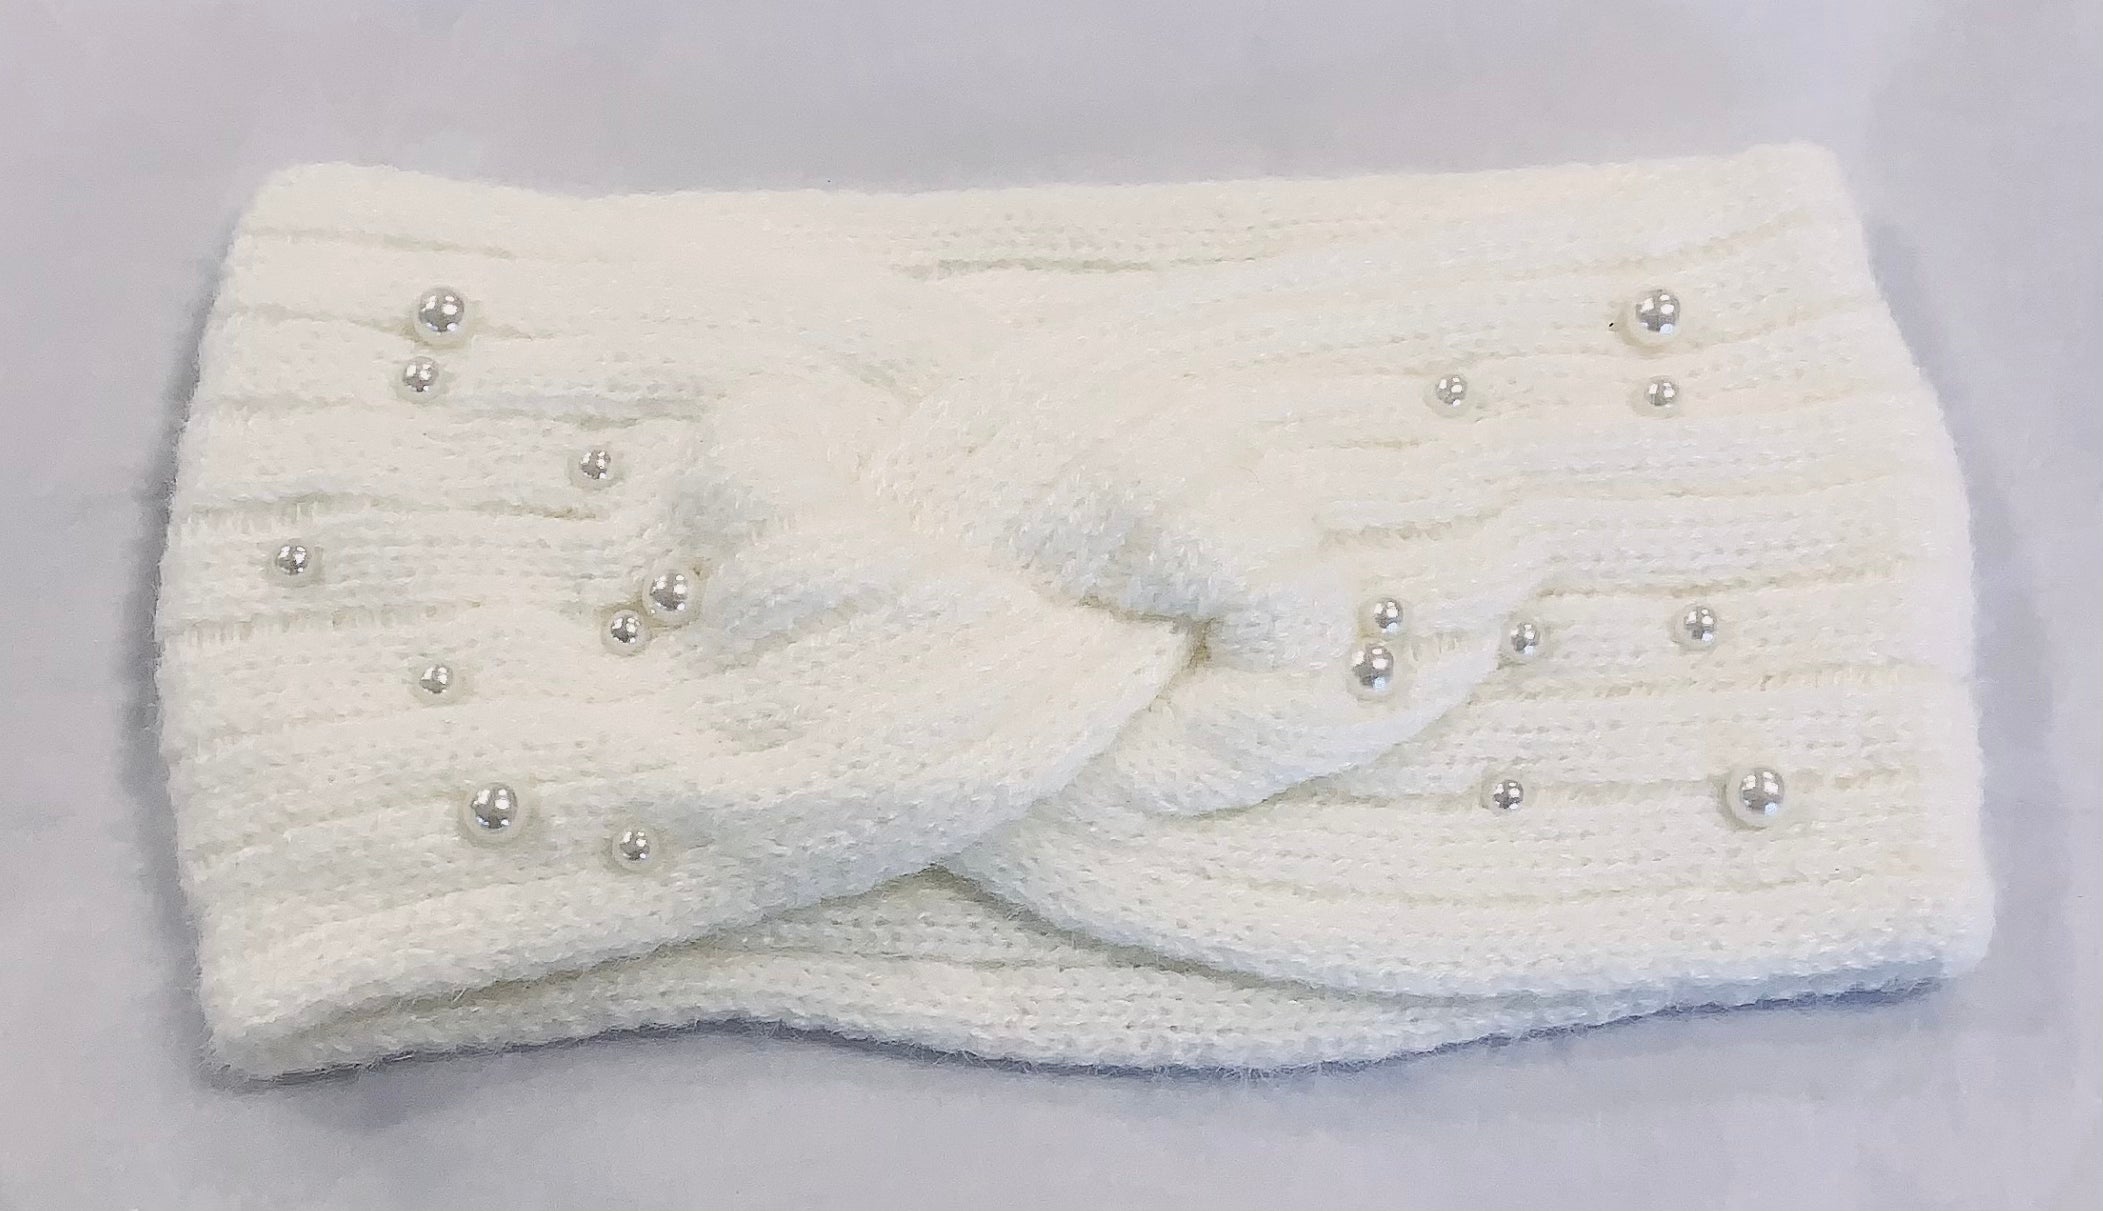 Winter Warm Headband Knit Woolly Head Ear Warmer Wrap Sweatband with Pearl Motifs - White